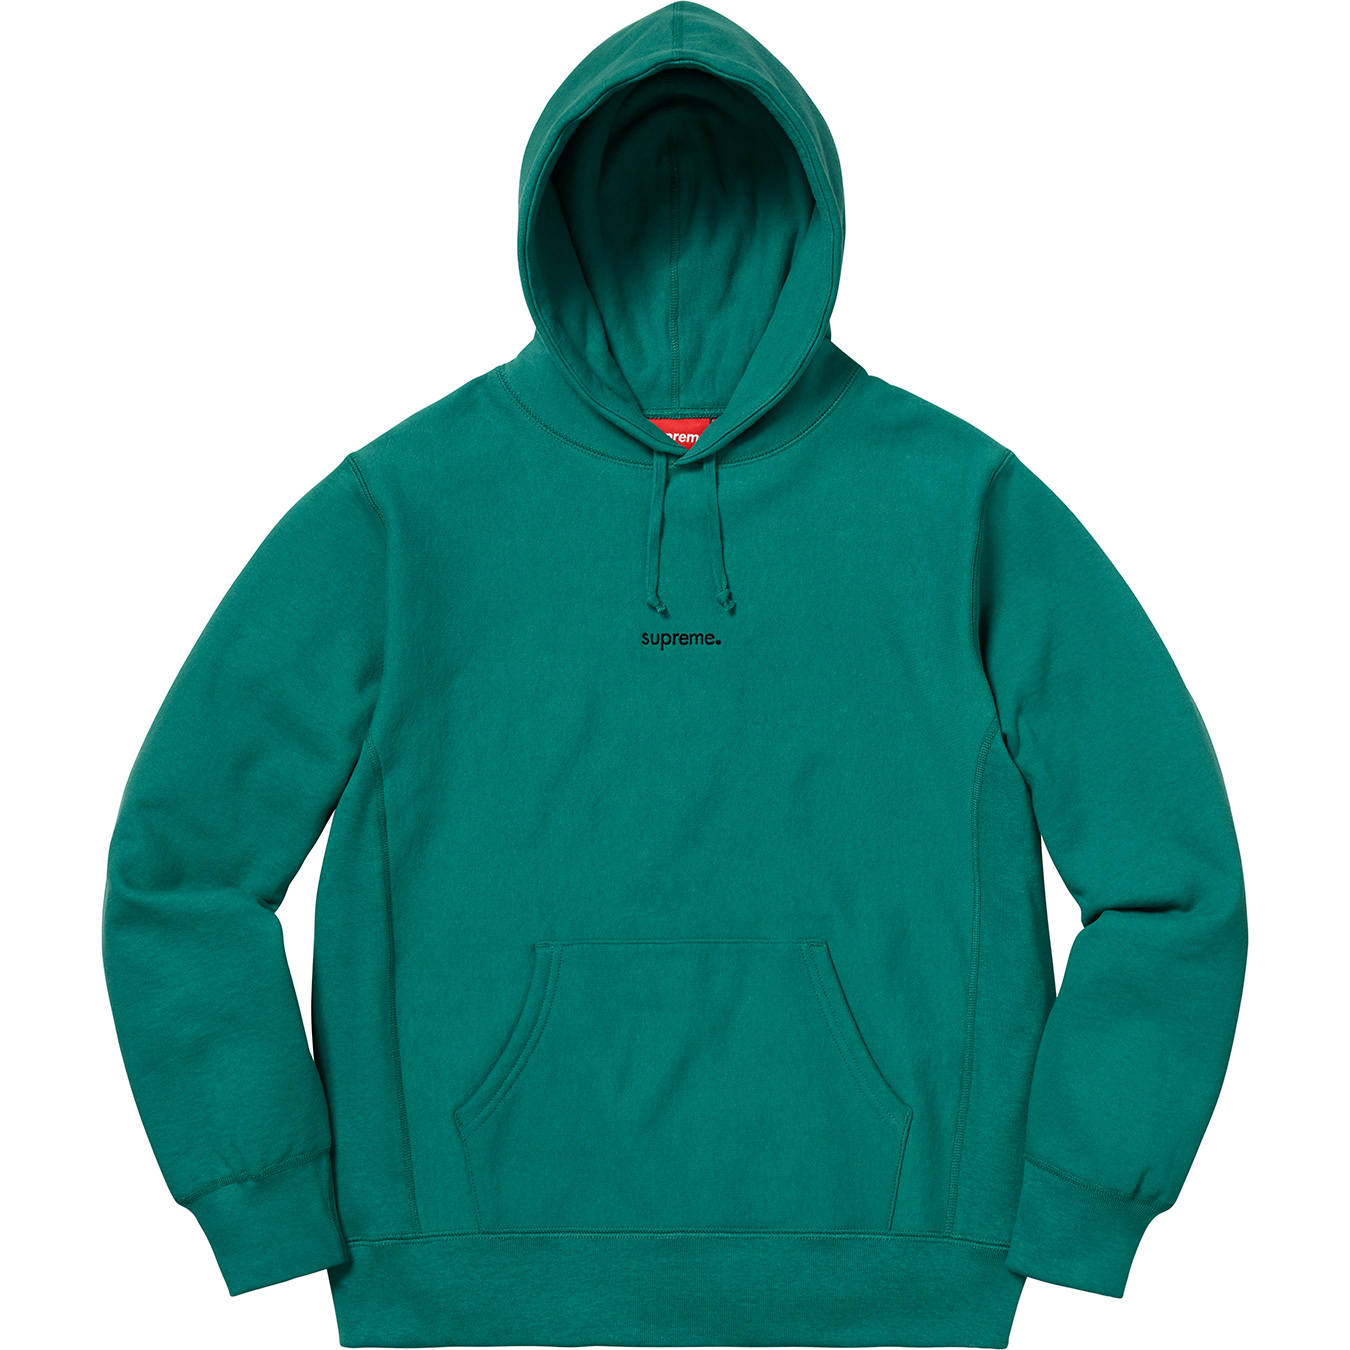 Supreme 18fw trademark hooded sweatshirt www.krzysztofbialy.com